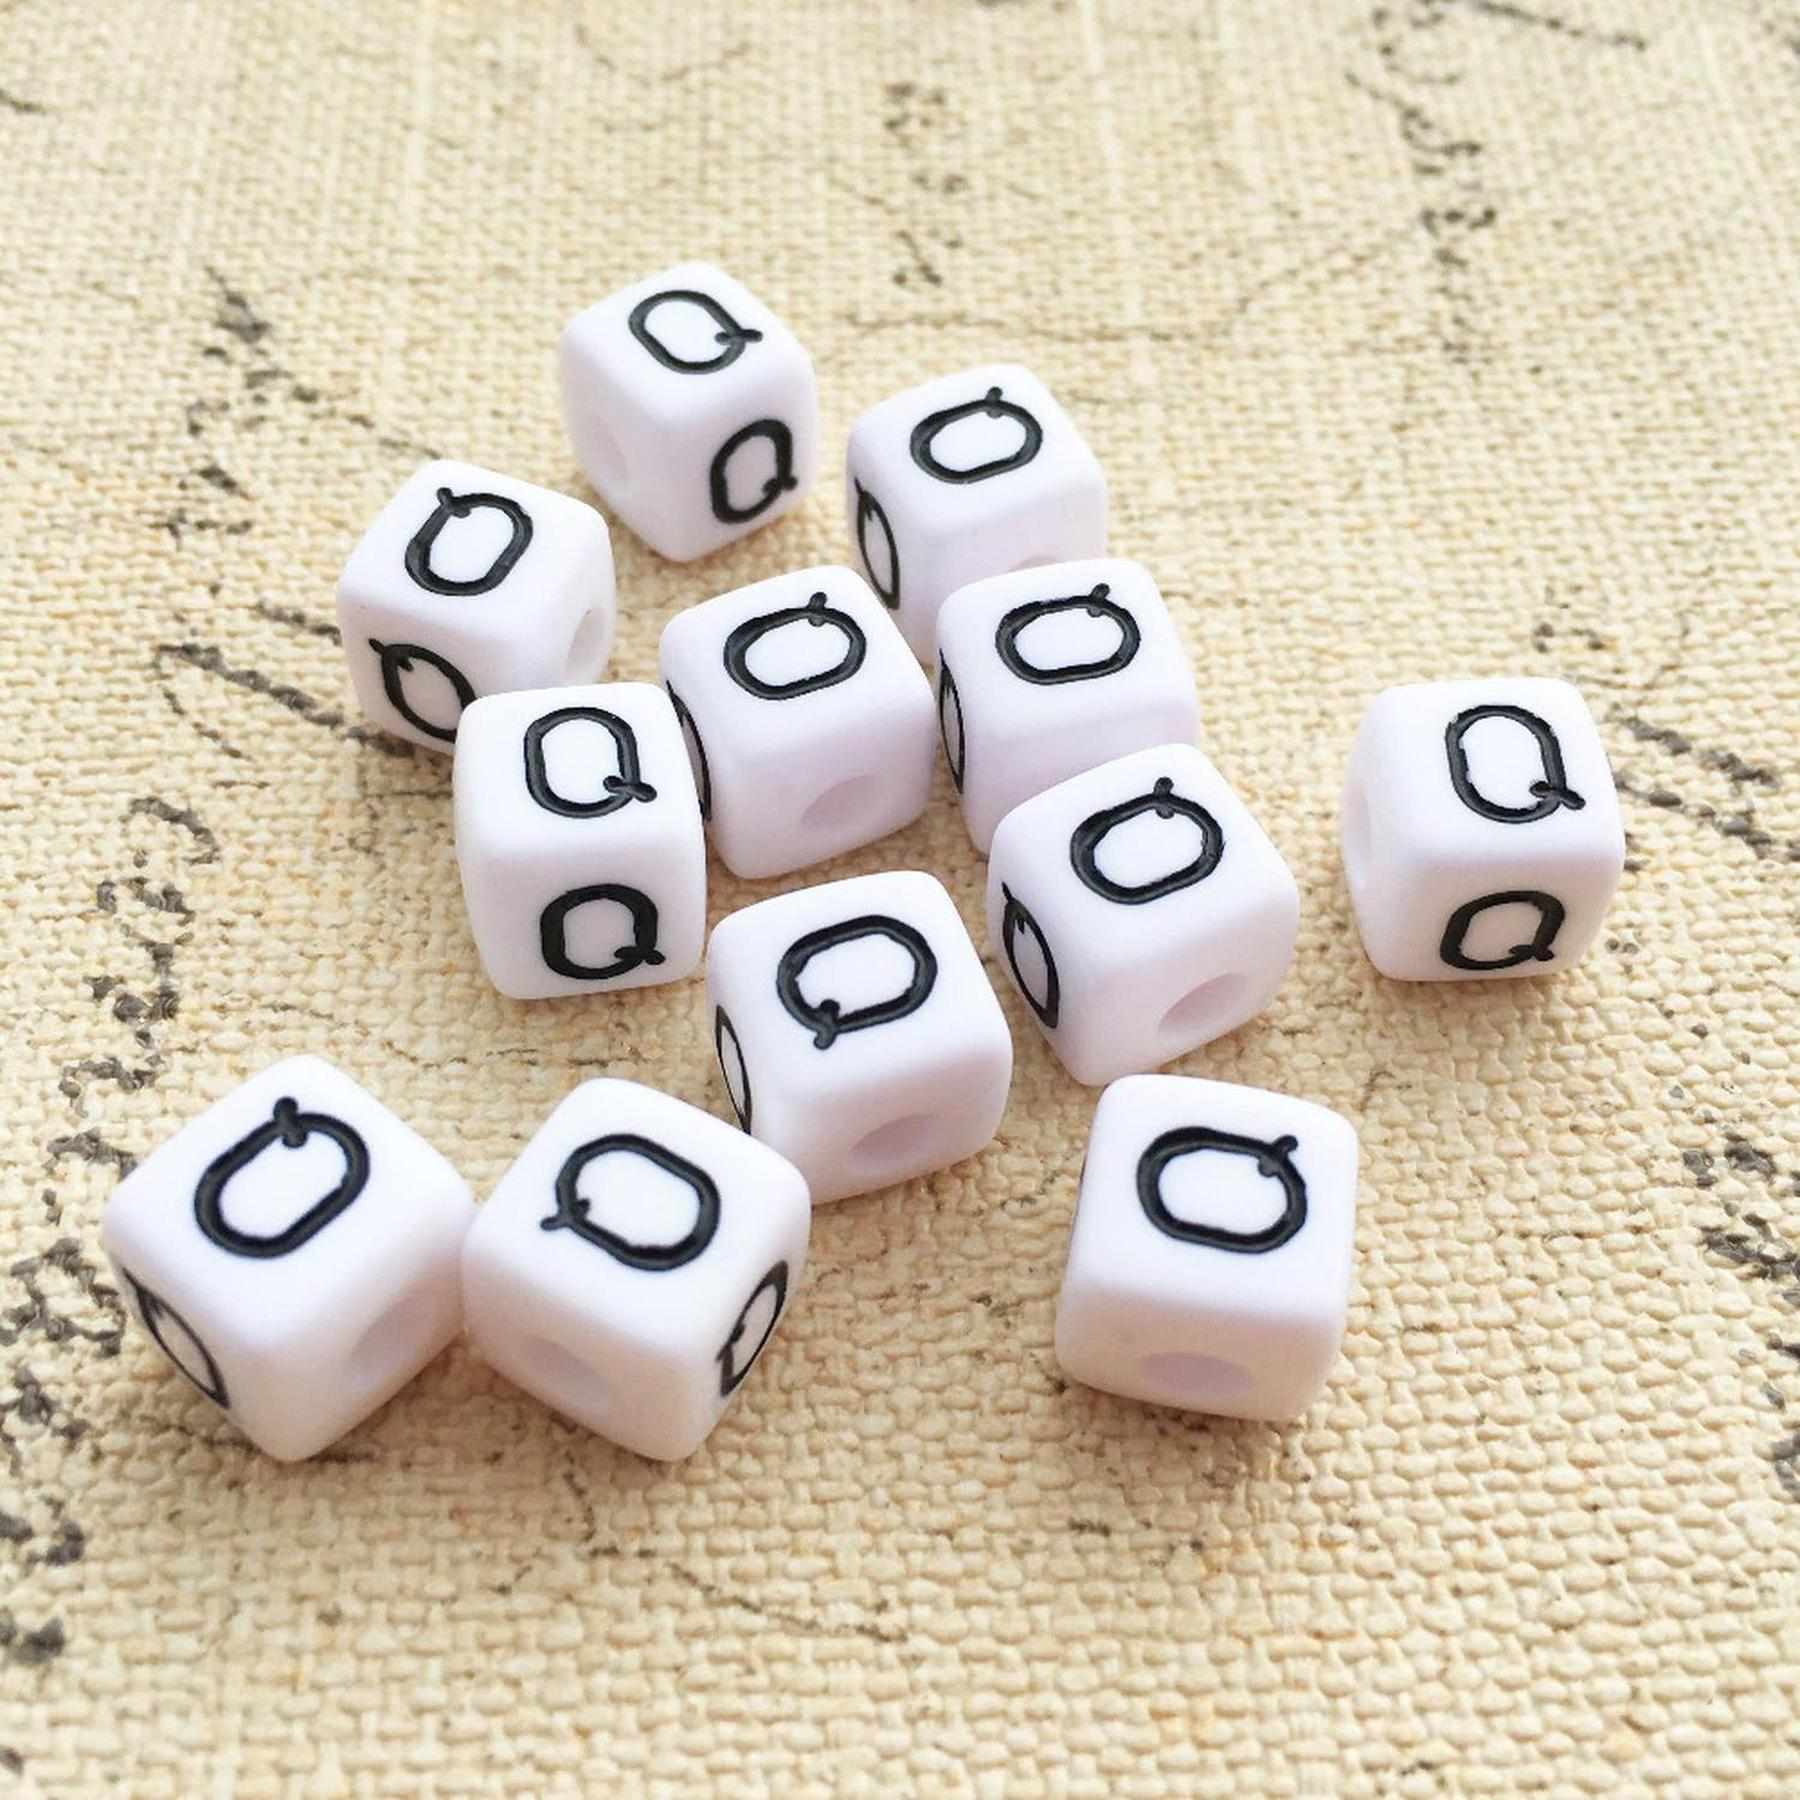 Buchstaben Perlen, 30 Stück, 6x6 mm, weiß mit schwarz, eckig, Buchstabe Q